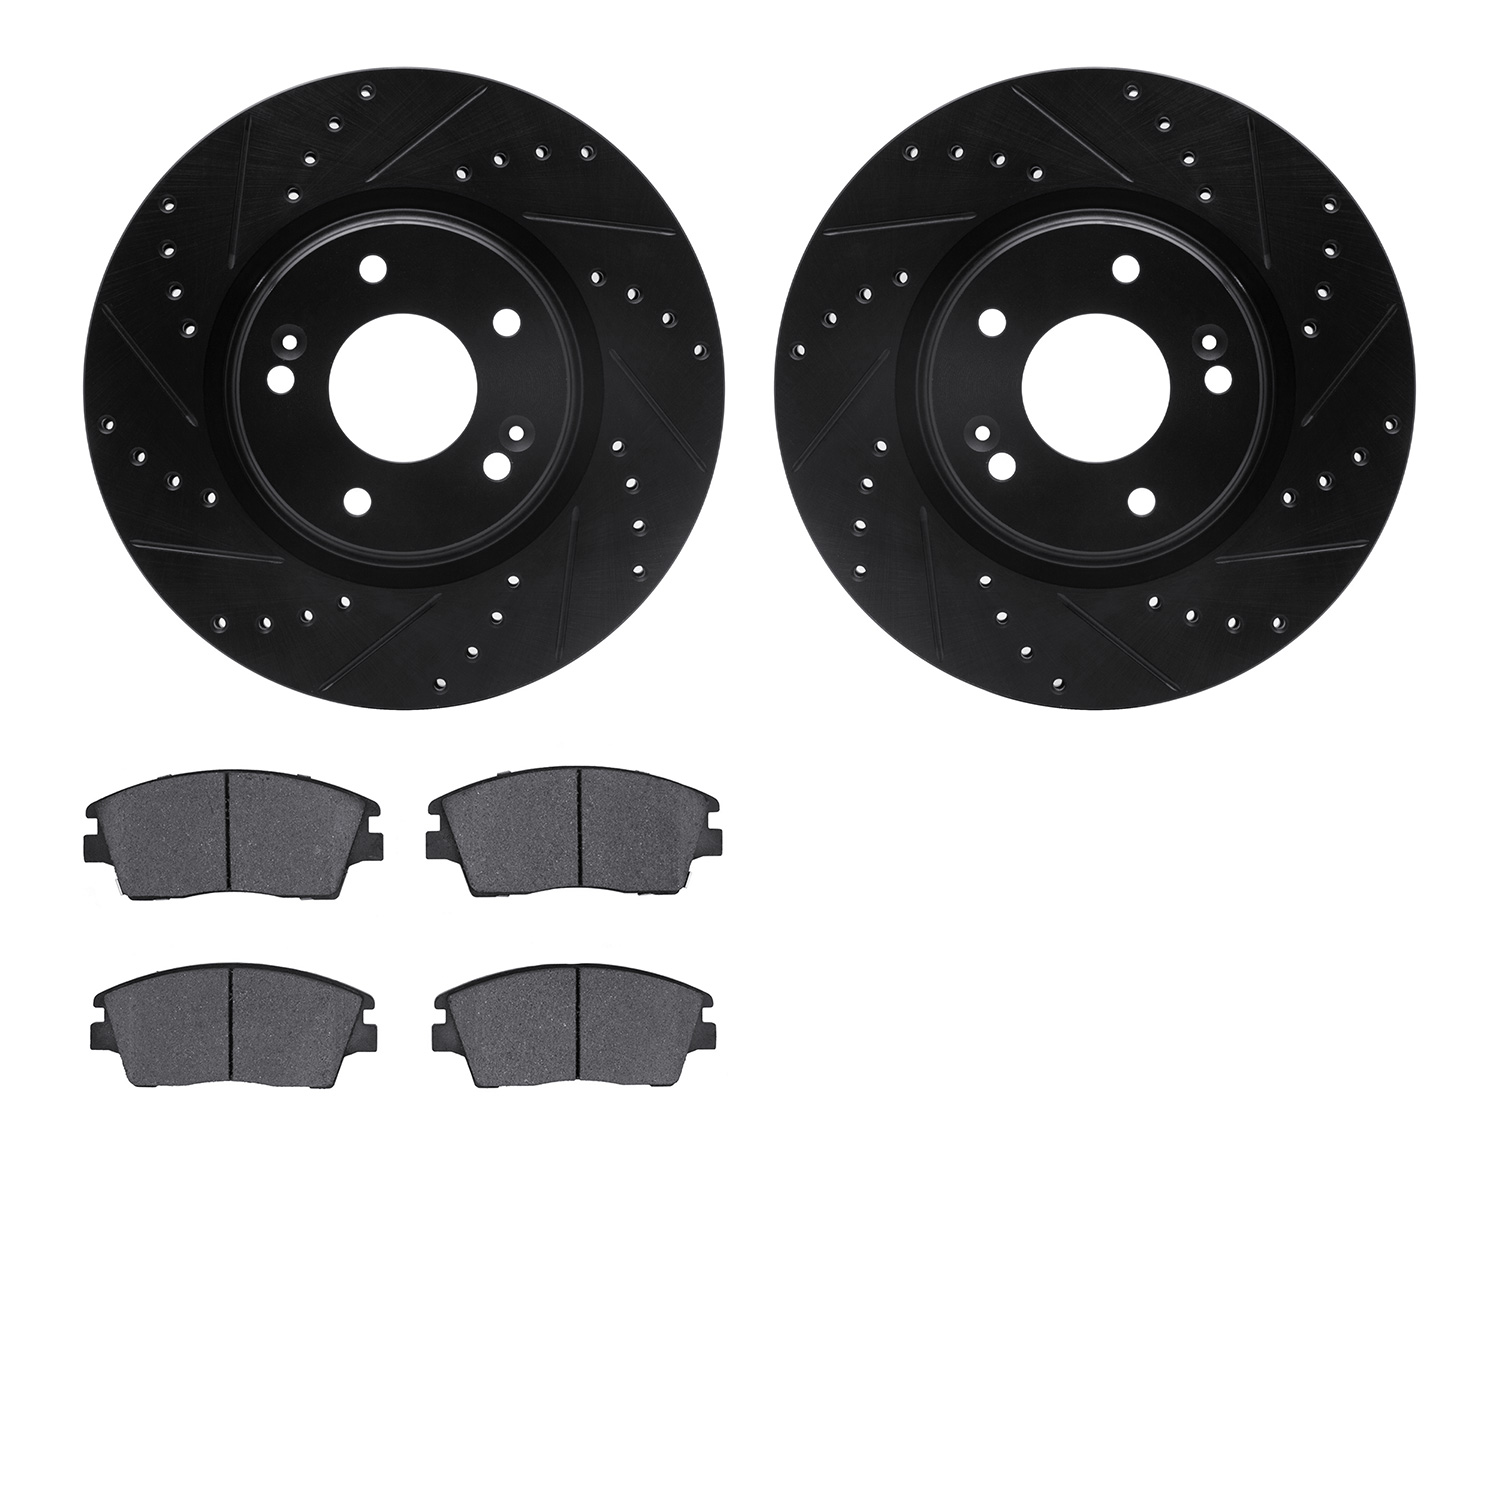 8302-03091 Drilled/Slotted Brake Rotors with 3000-Series Ceramic Brake Pads Kit [Black], Fits Select Kia/Hyundai/Genesis, Positi